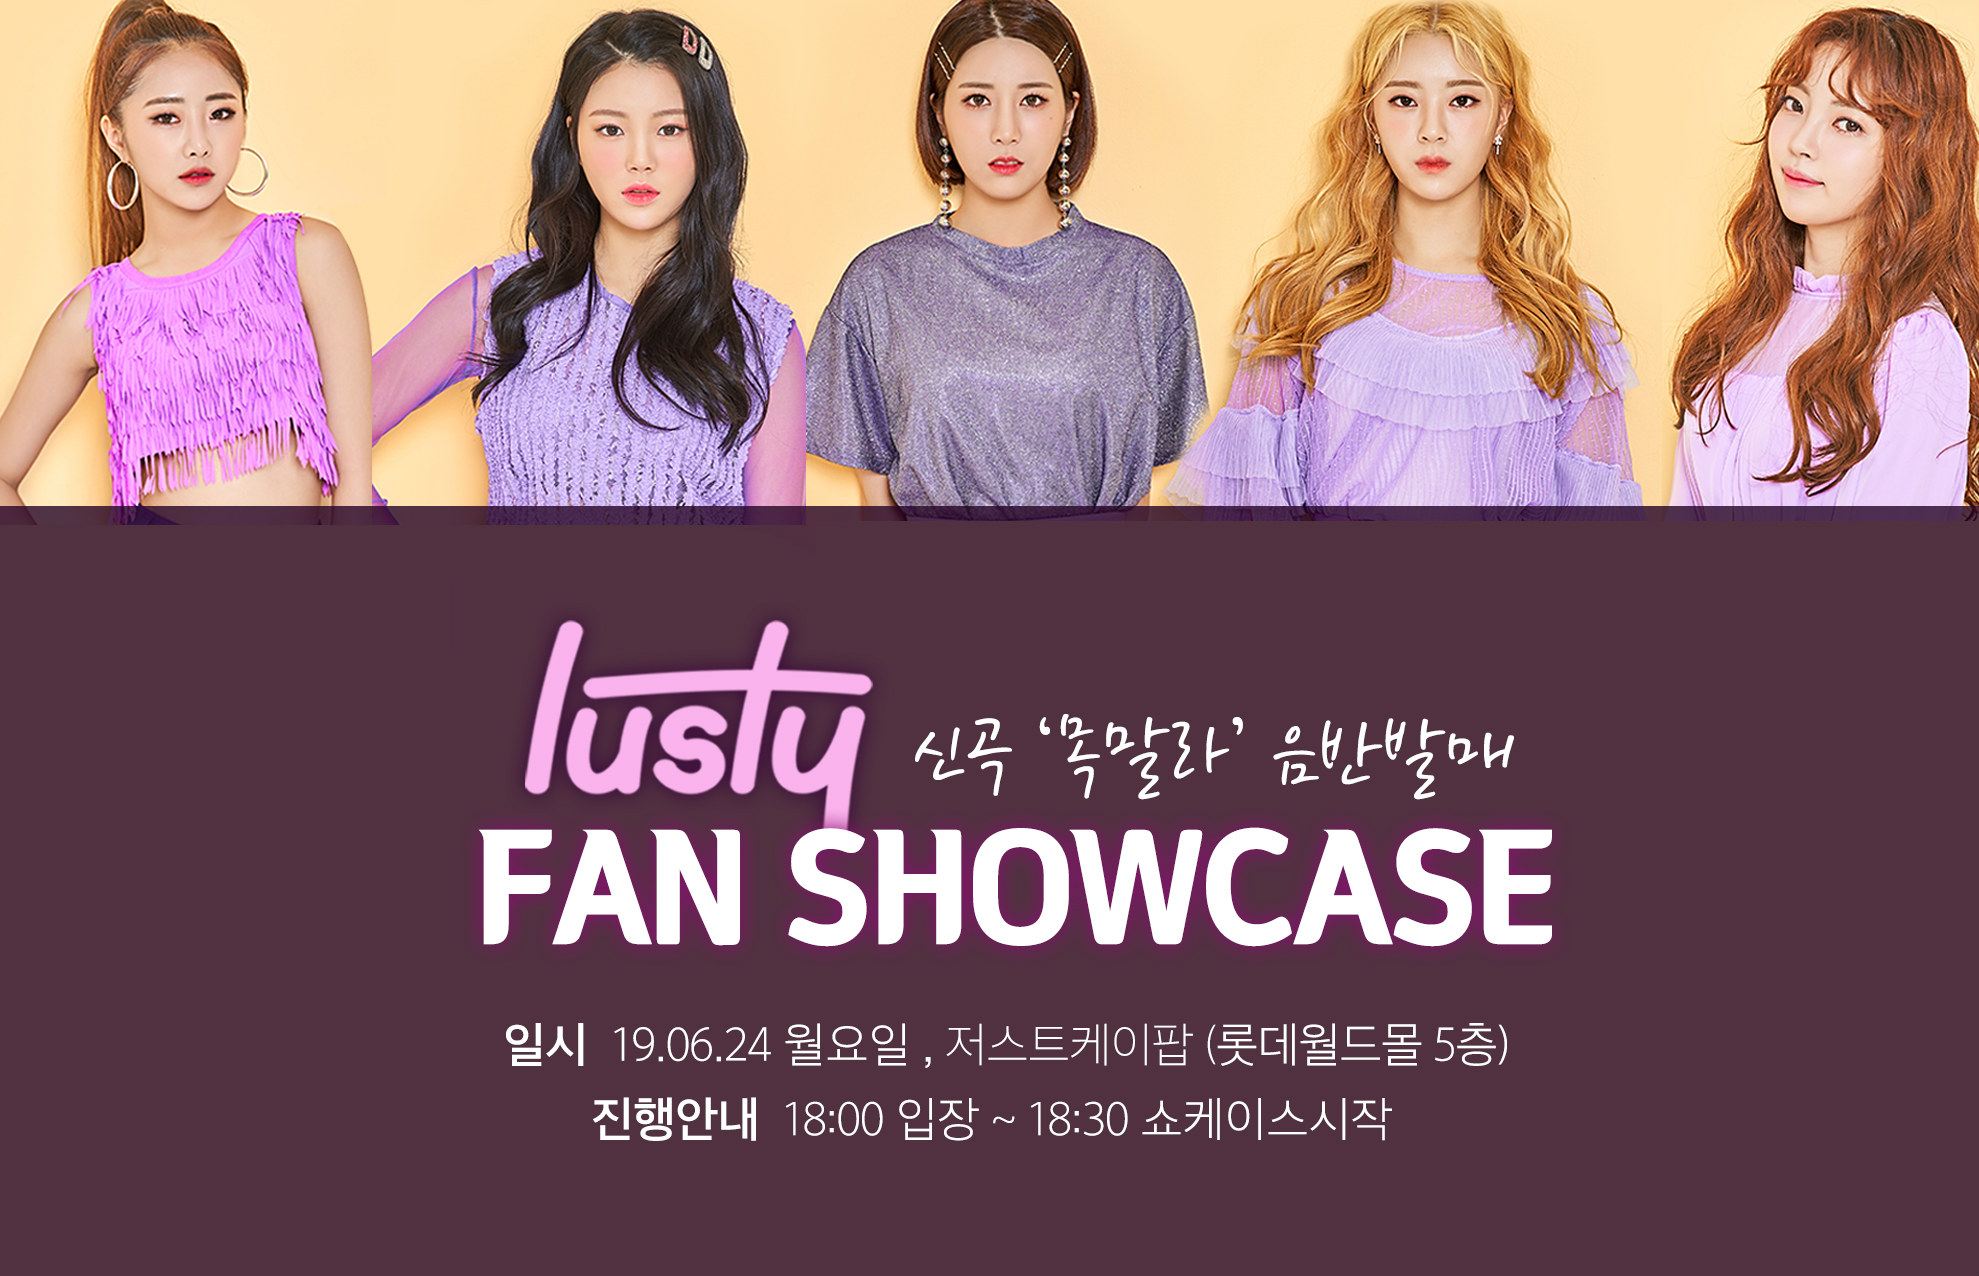 5인조 신인 걸그룹 러스티(LUSTY), 오는 24일(월) 데뷔곡 '목말라' 쇼케이스